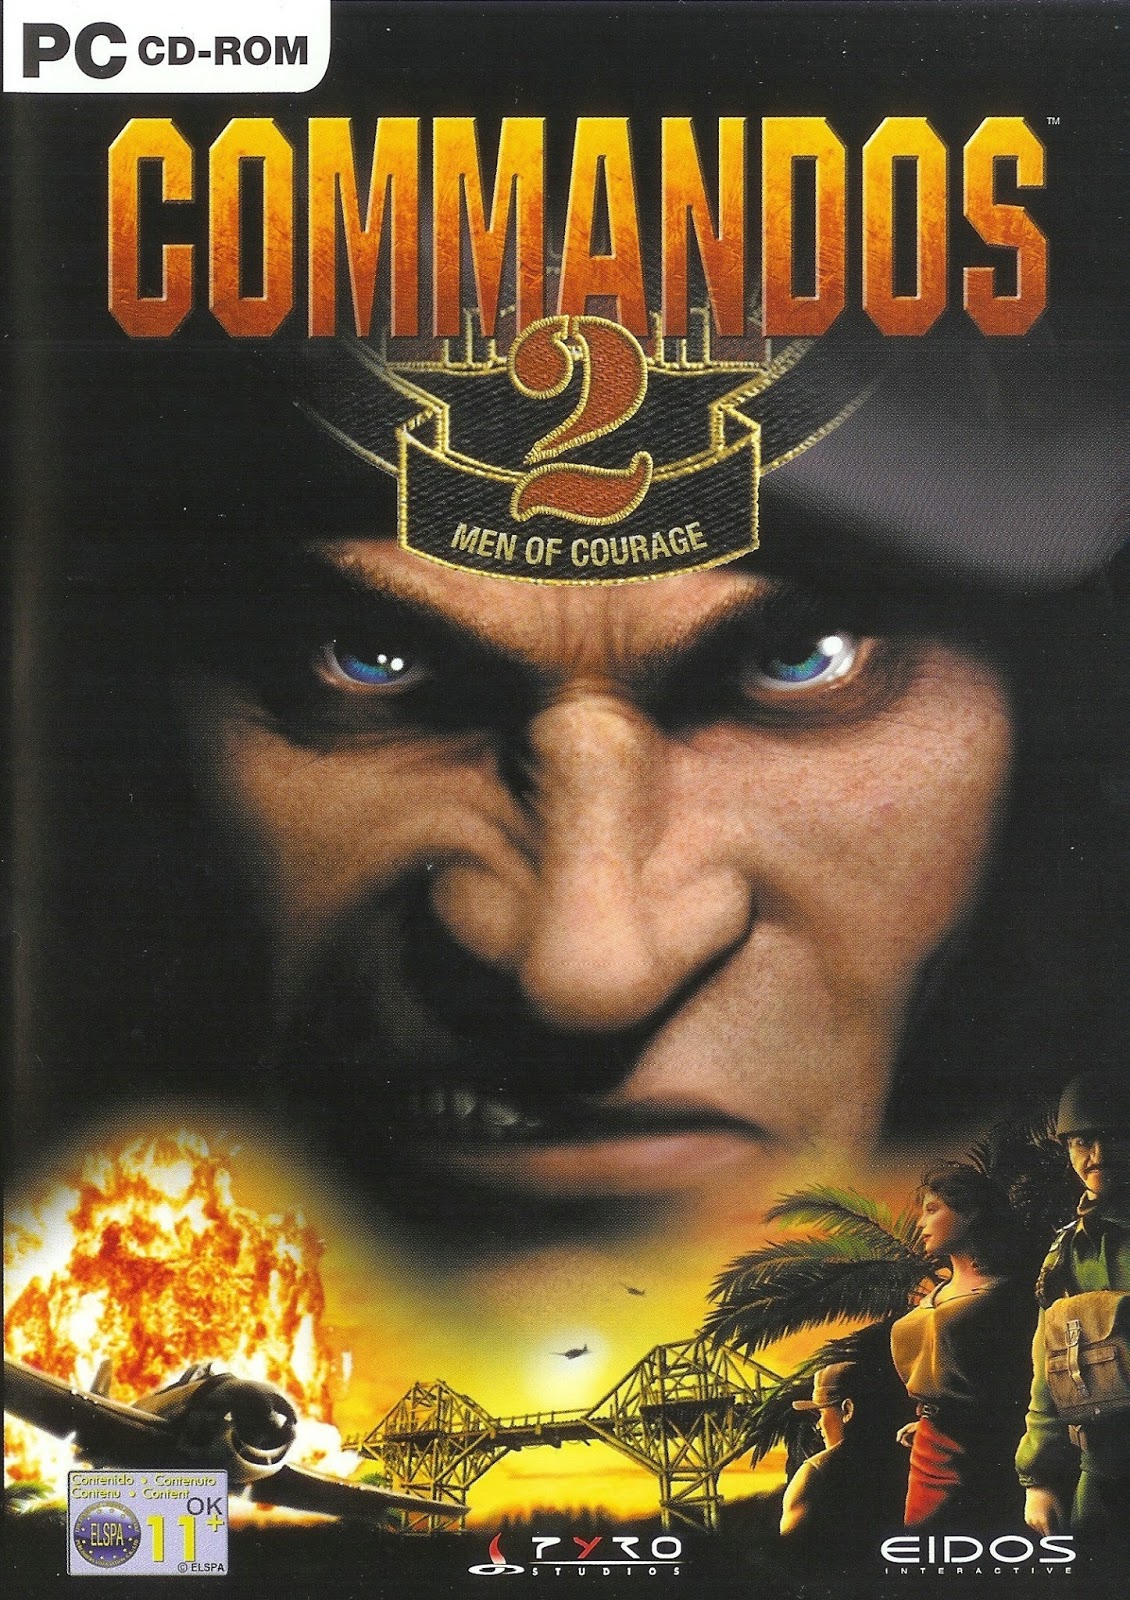 commandos 2 full game